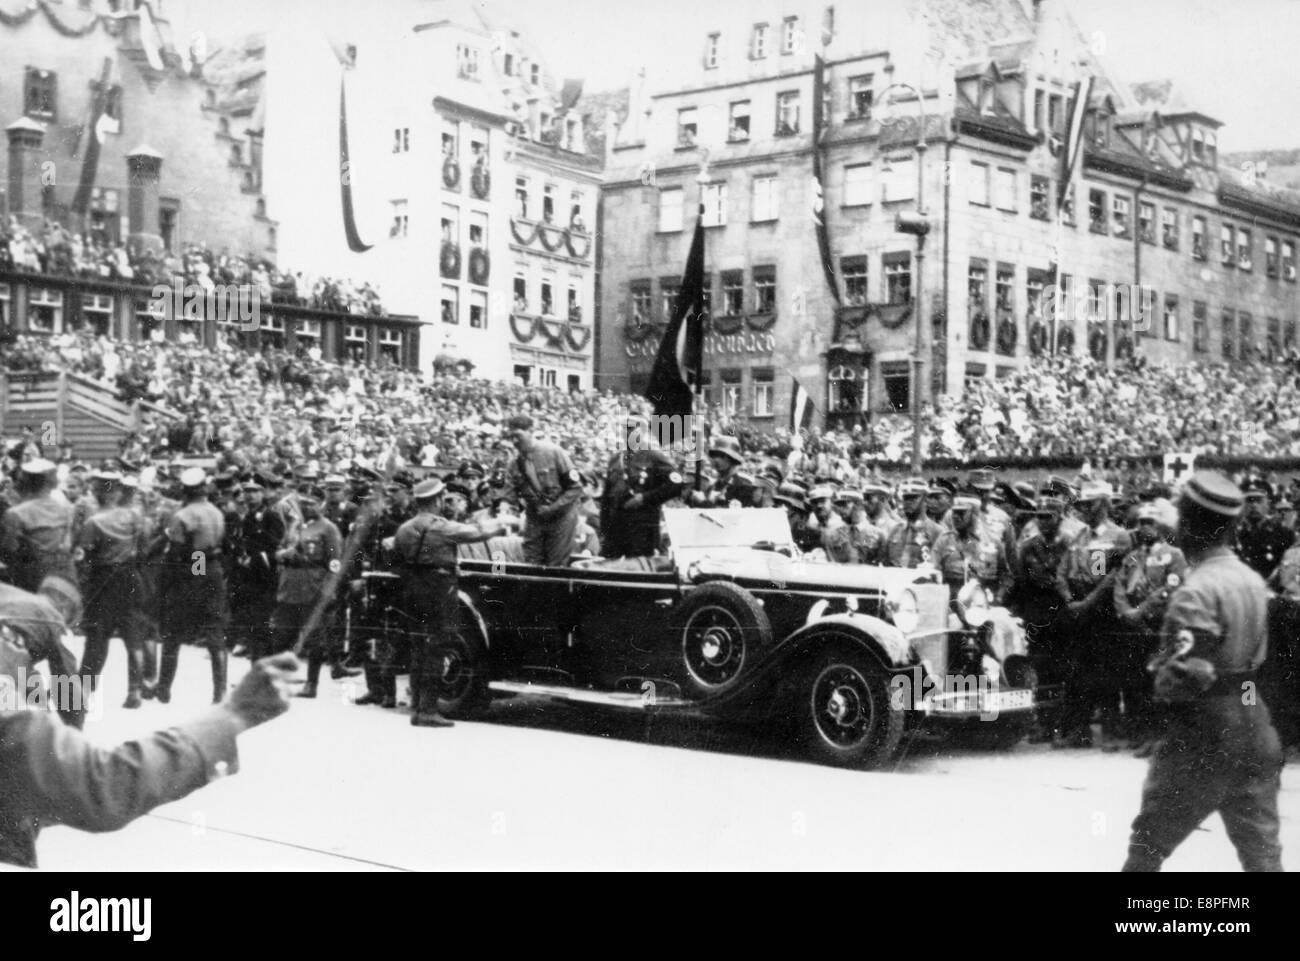 Nürnberger Rallye 1933 in Nürnberg – Adolf Hitler bewertet eine SA (Sturmabteilung)-Parade. (Qualitätsmängel aufgrund der historischen Bildkopie) Fotoarchiv für Zeitgeschichtee - KEIN KABELDIENST - Stockfoto